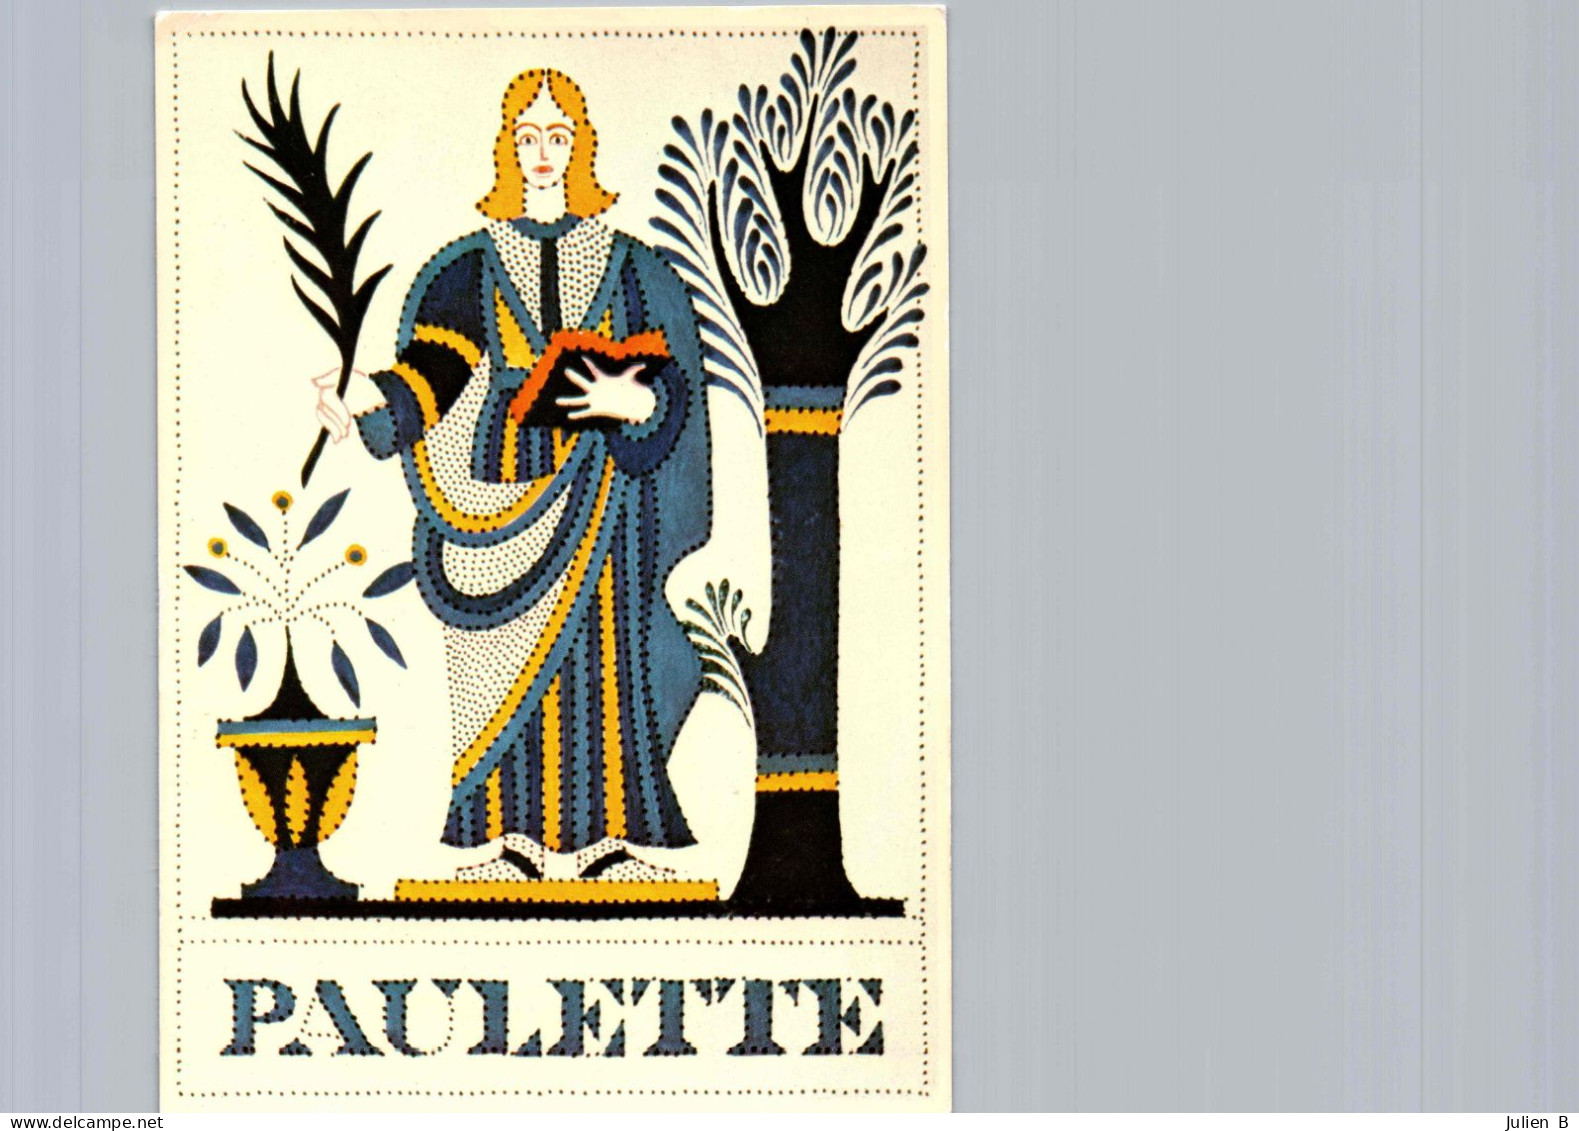 Paulette, Edition Betula - Vornamen